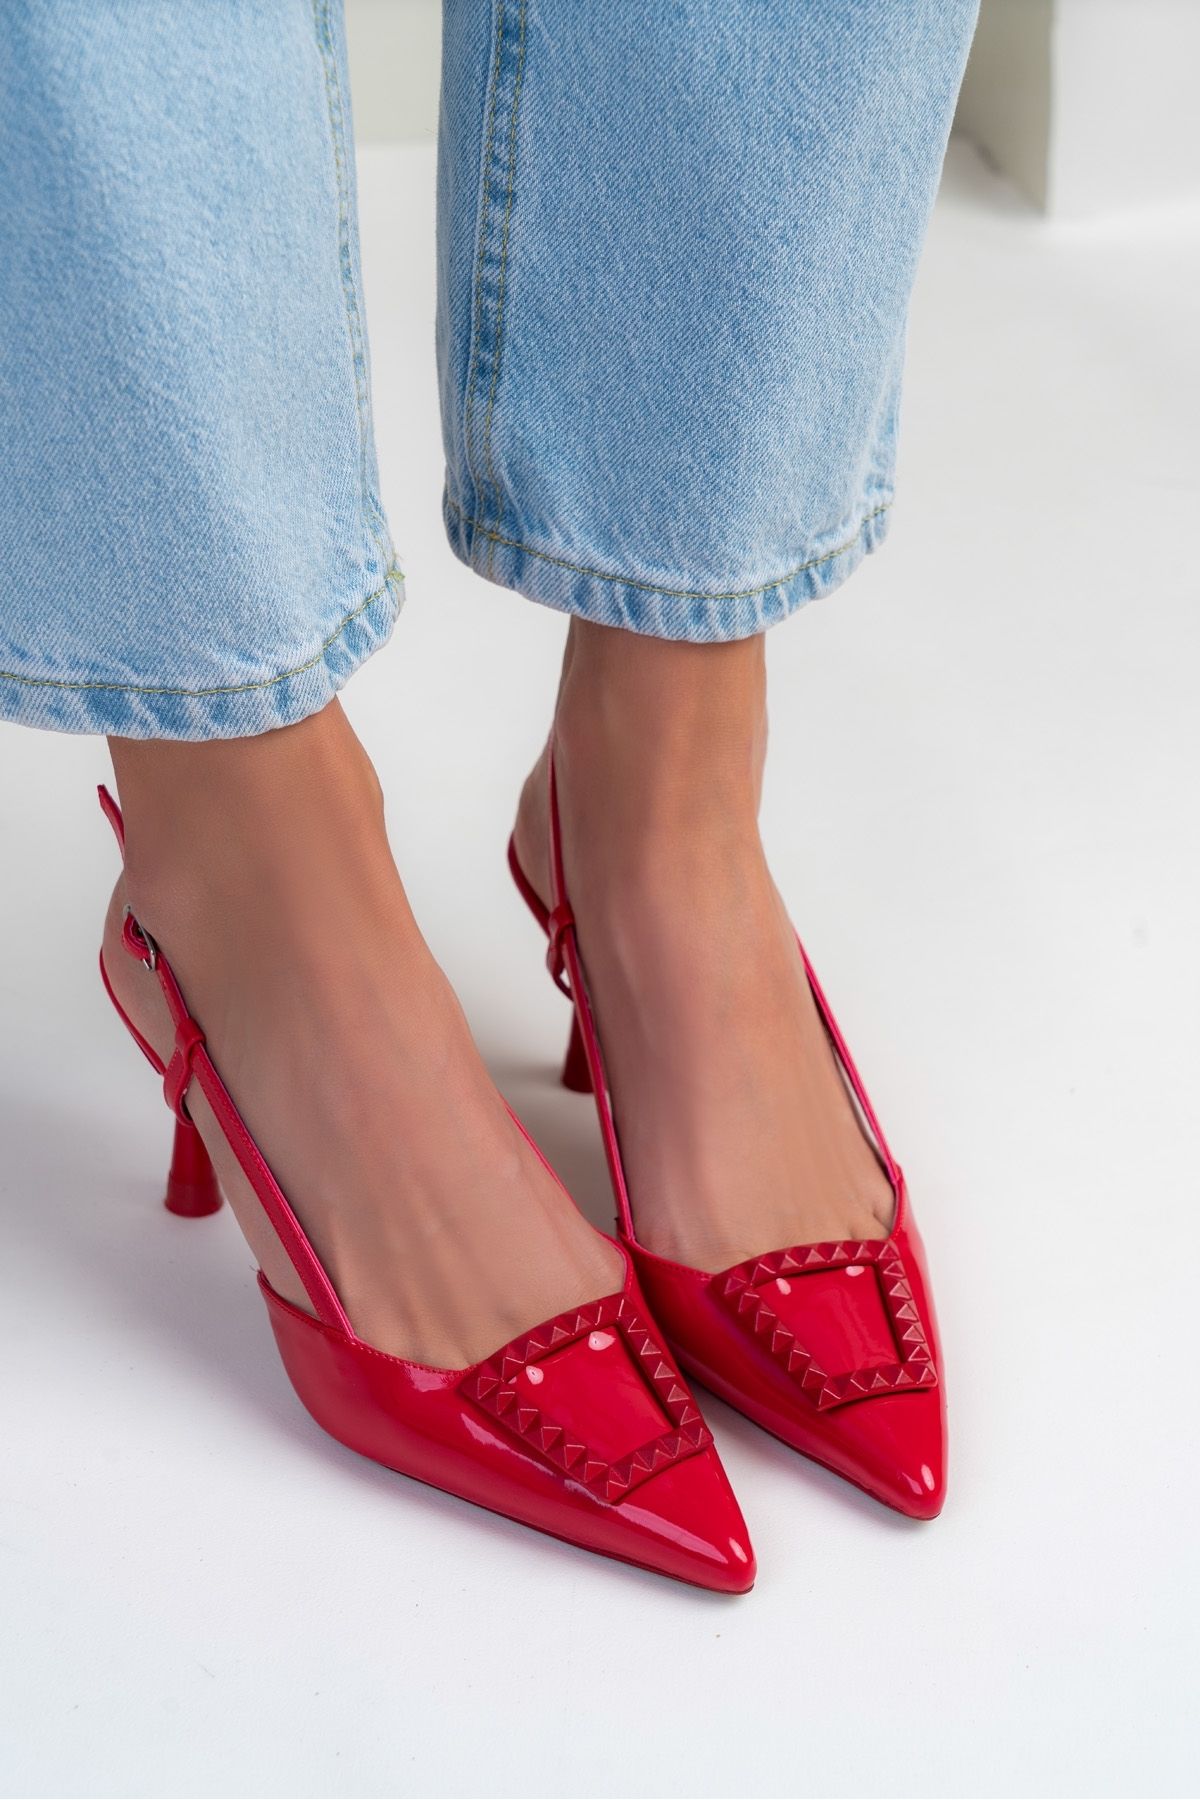 NİŞANTAŞI SHOES Susan Kırmızı Rugan Aksesuar Detay İnce Topuklu Kadın Ayakkabı